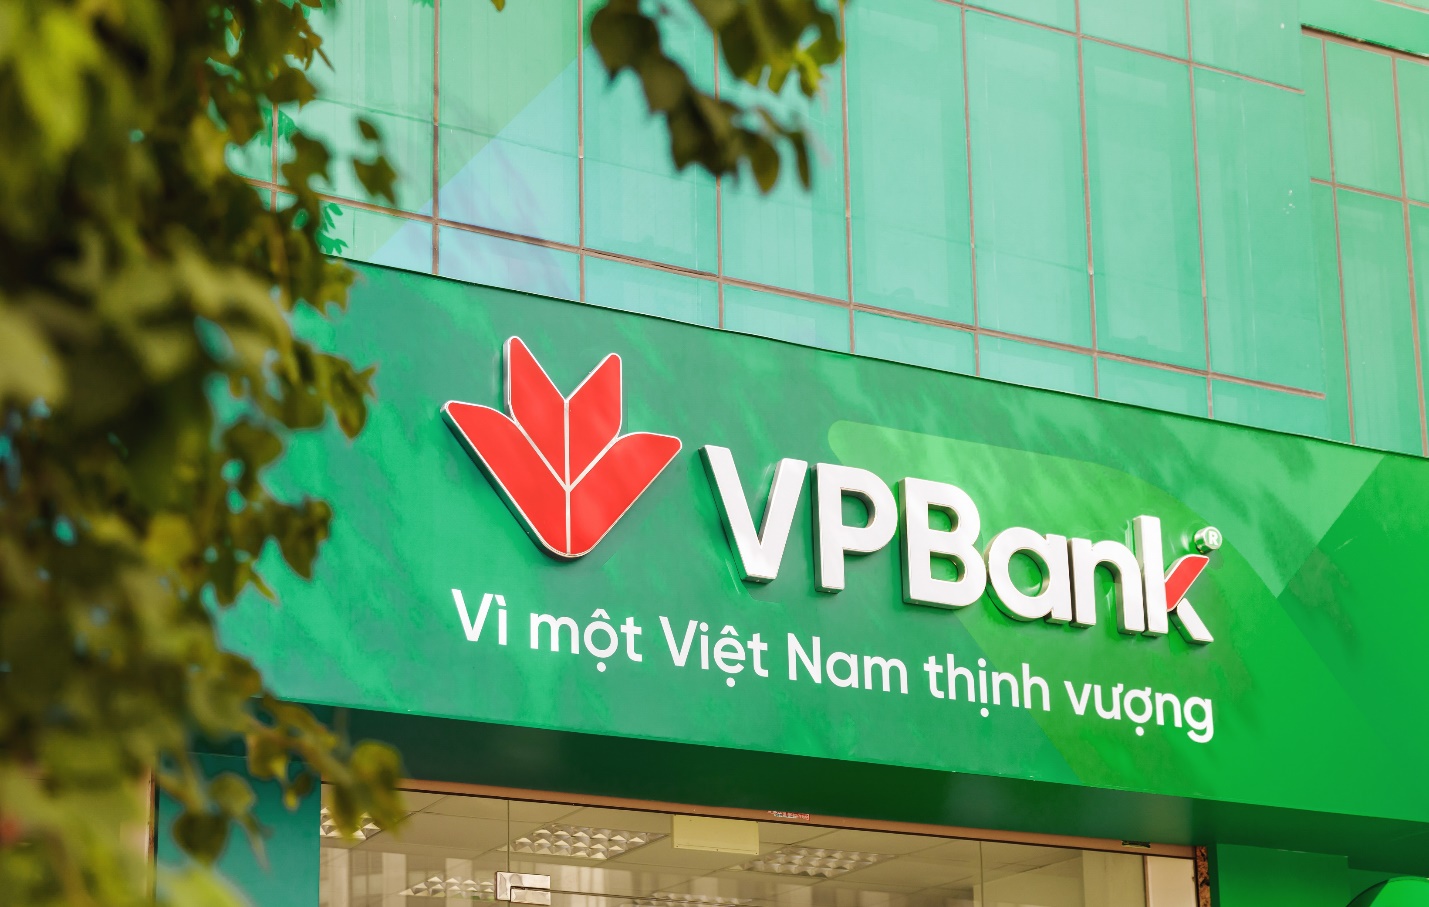 VPBank và lời hứa “Vì một Việt Nam thịnh vượng” - Ảnh 3.